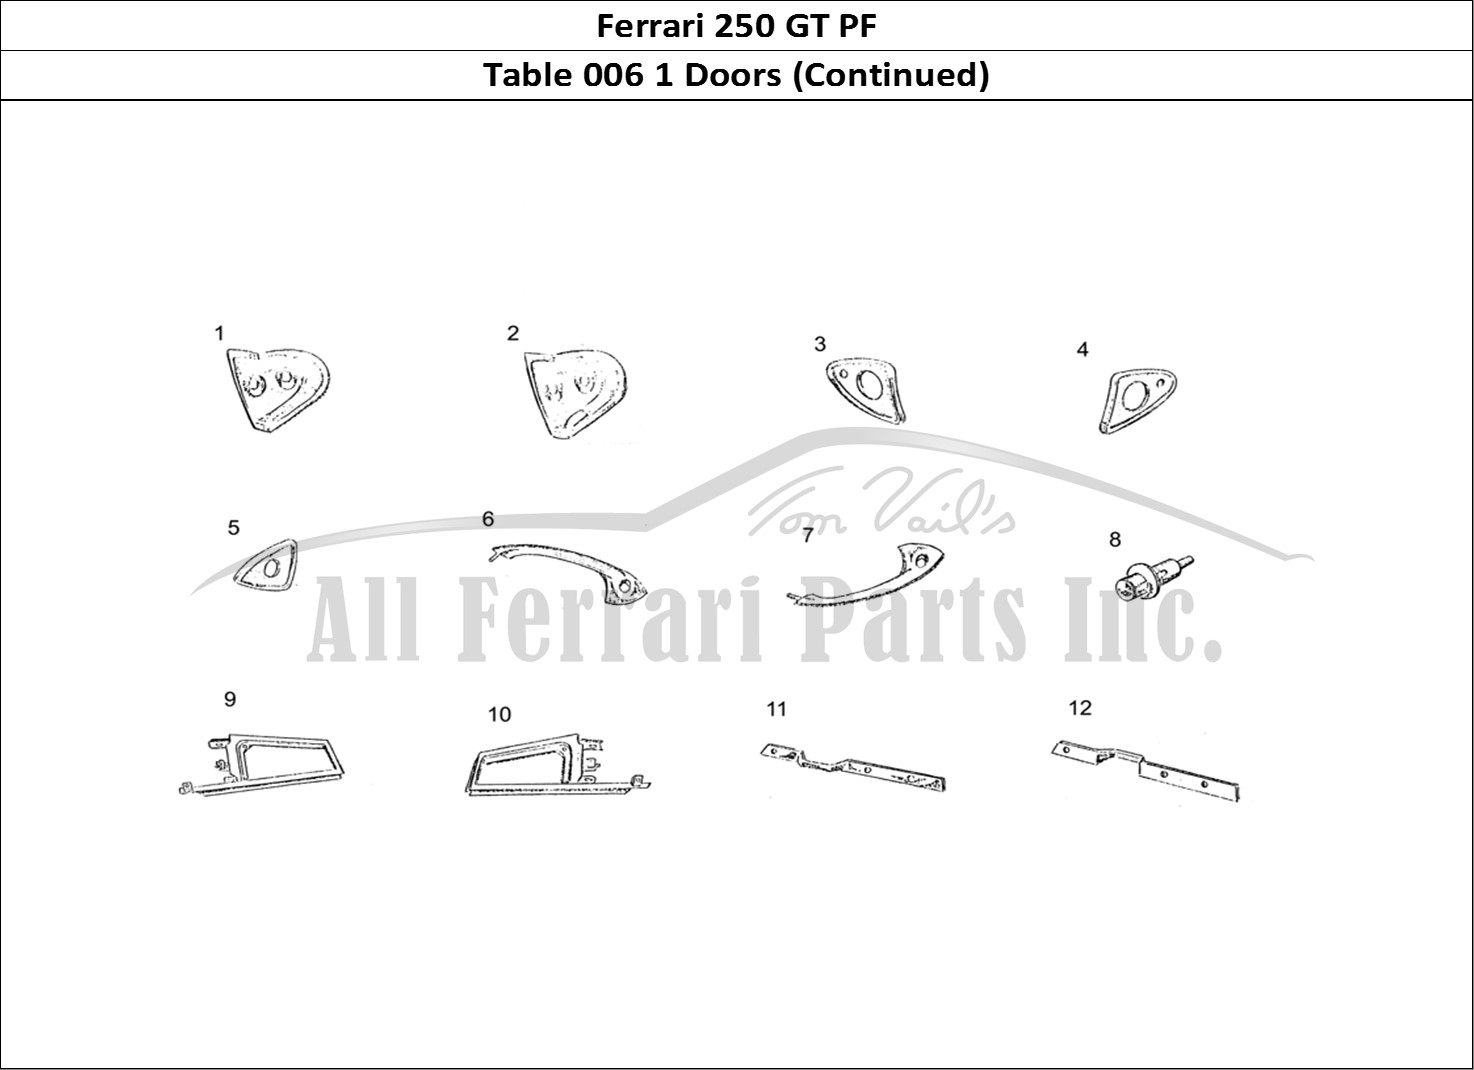 Ferrari Parts Ferrari 250 GT (Coachwork) Page 006 Door (continued)